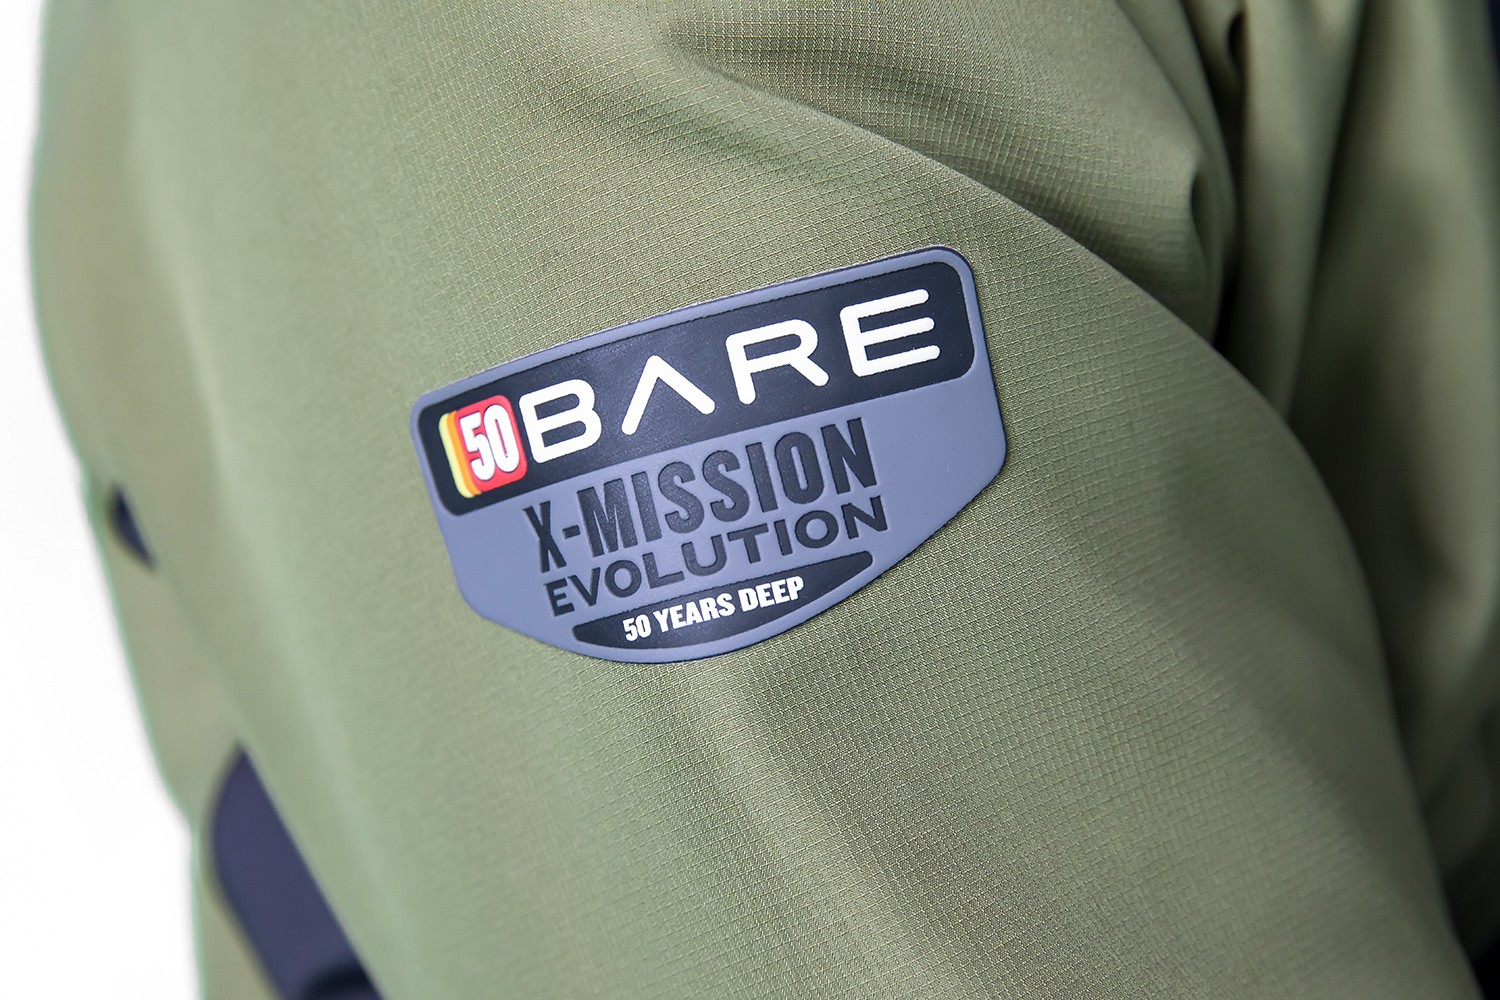 Bare 50th Anniversary X-Mission Evolution